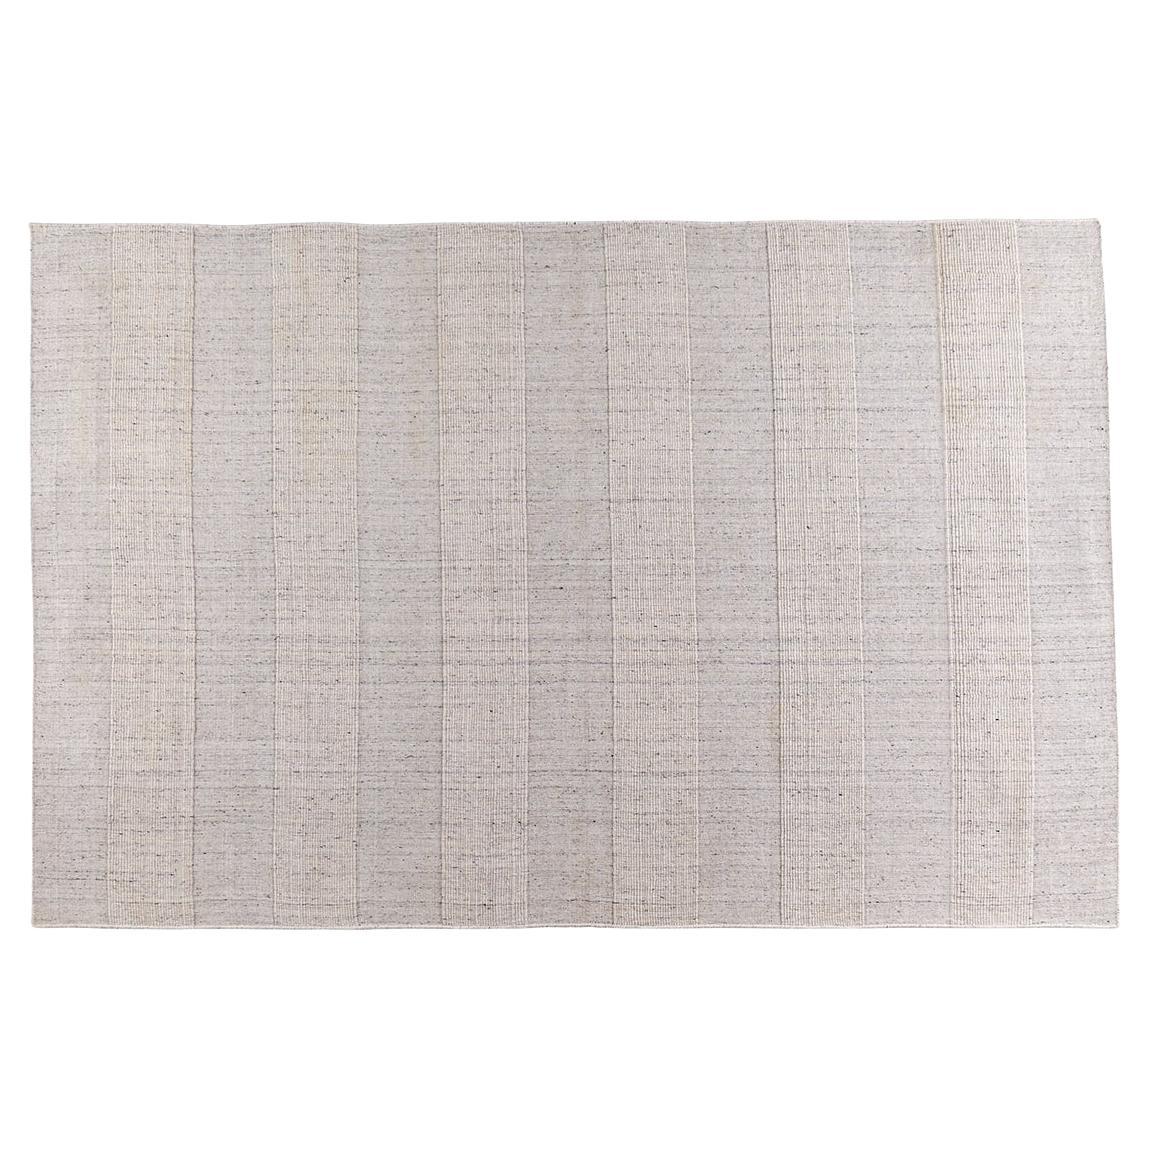 Teppich „Mithun“ handgewebt aus nachhaltiger, umweltfreundlicher Wollmischung, 170 x 240 cm